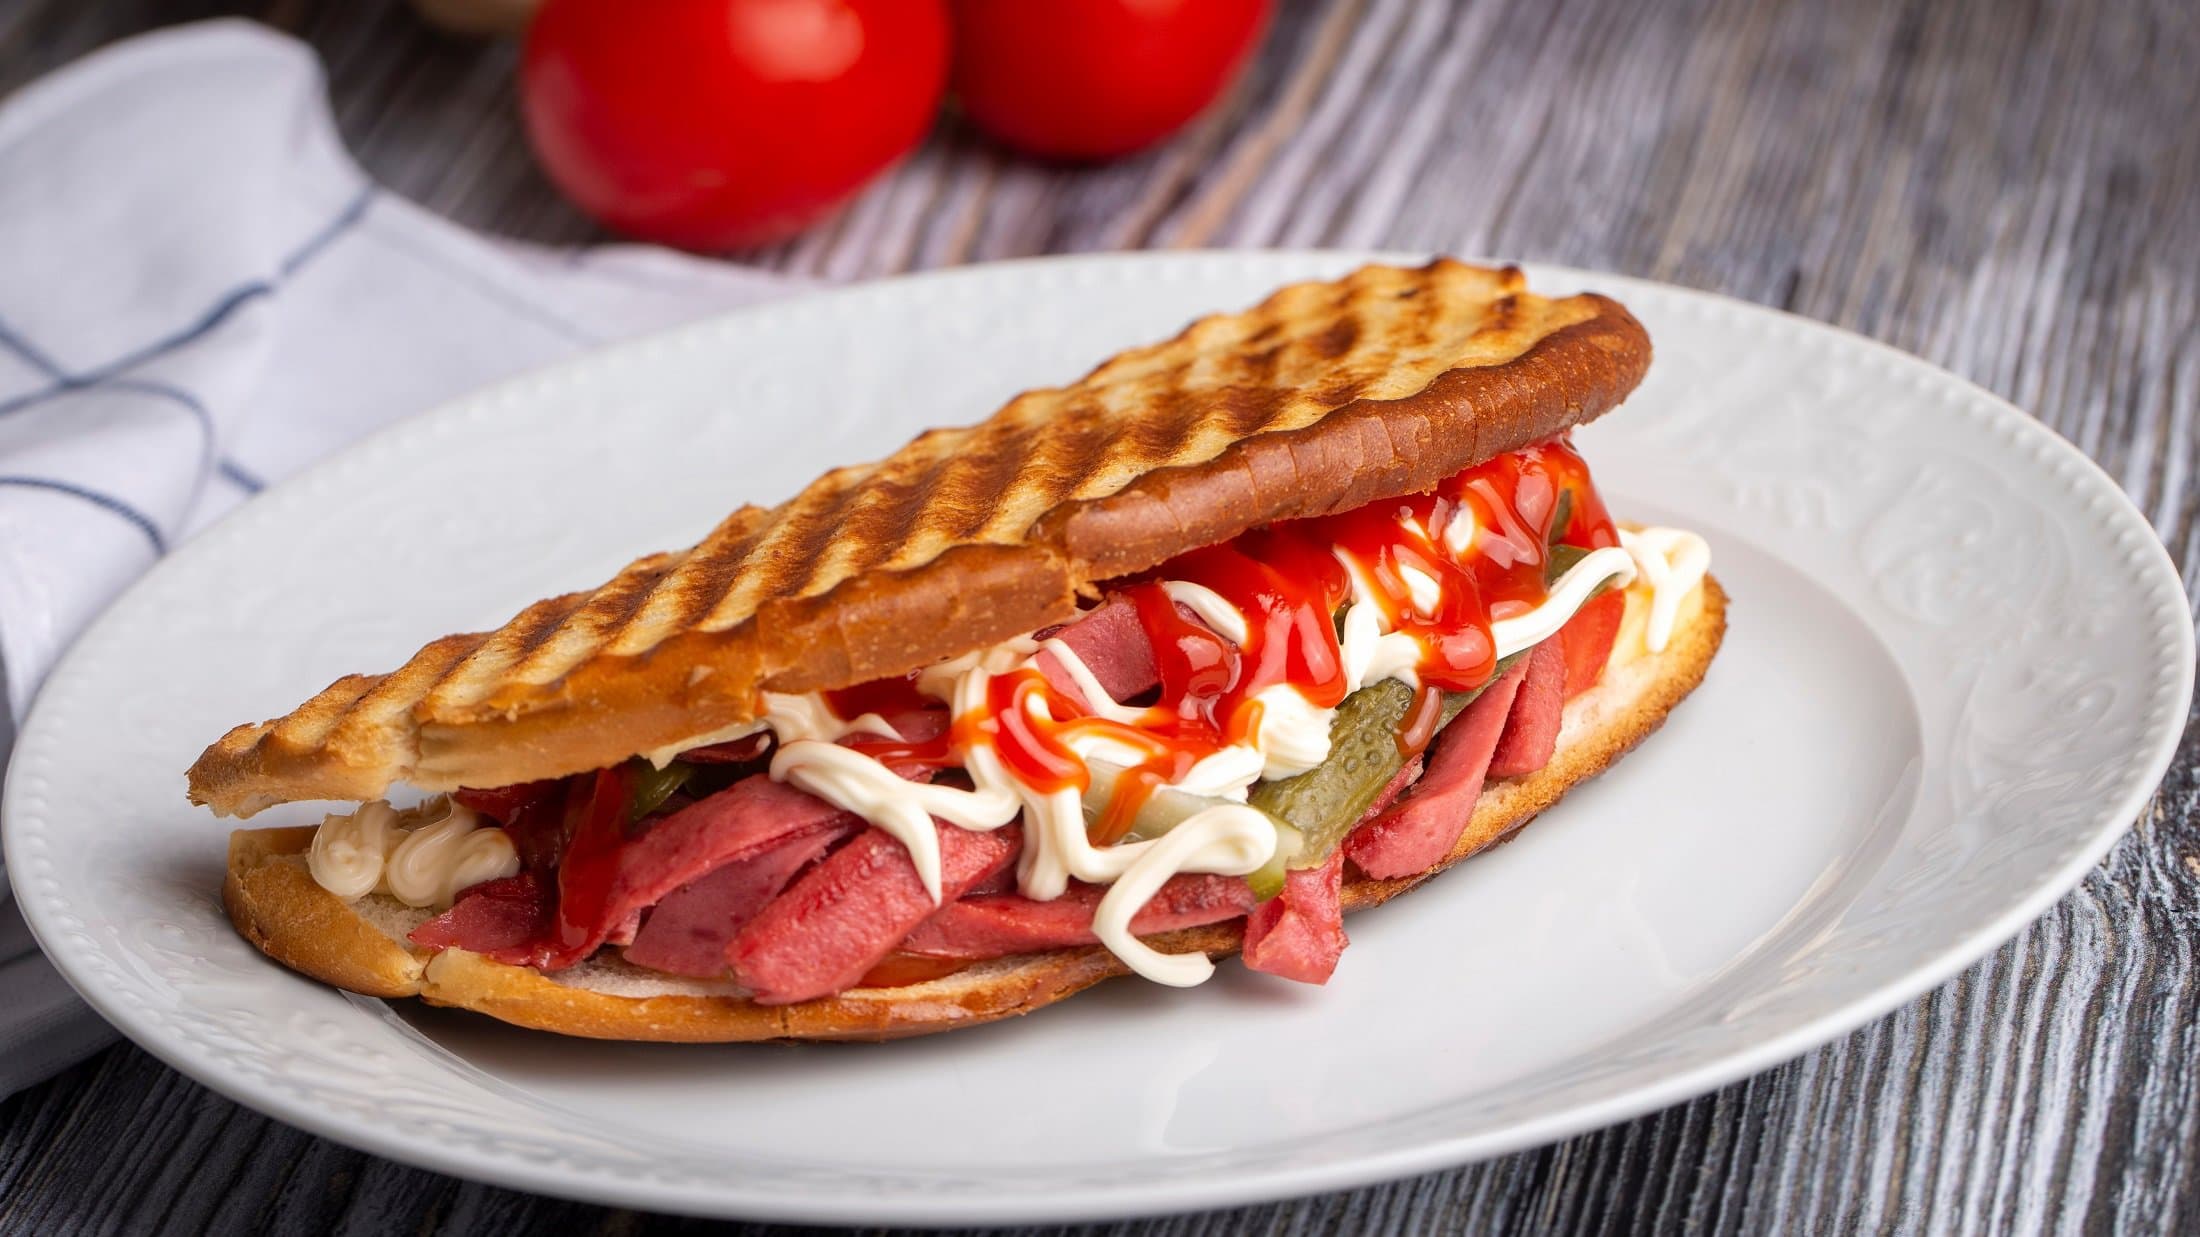 Draufsicht schräg: ein türkisches Sandwich, das Ayvalık Toast mit Sucuk heißt, liegt auf einem weißen Teller. Der Untergrund ist aus Holt und darauf liegen noch zwei Tomaten und ein Tuch.